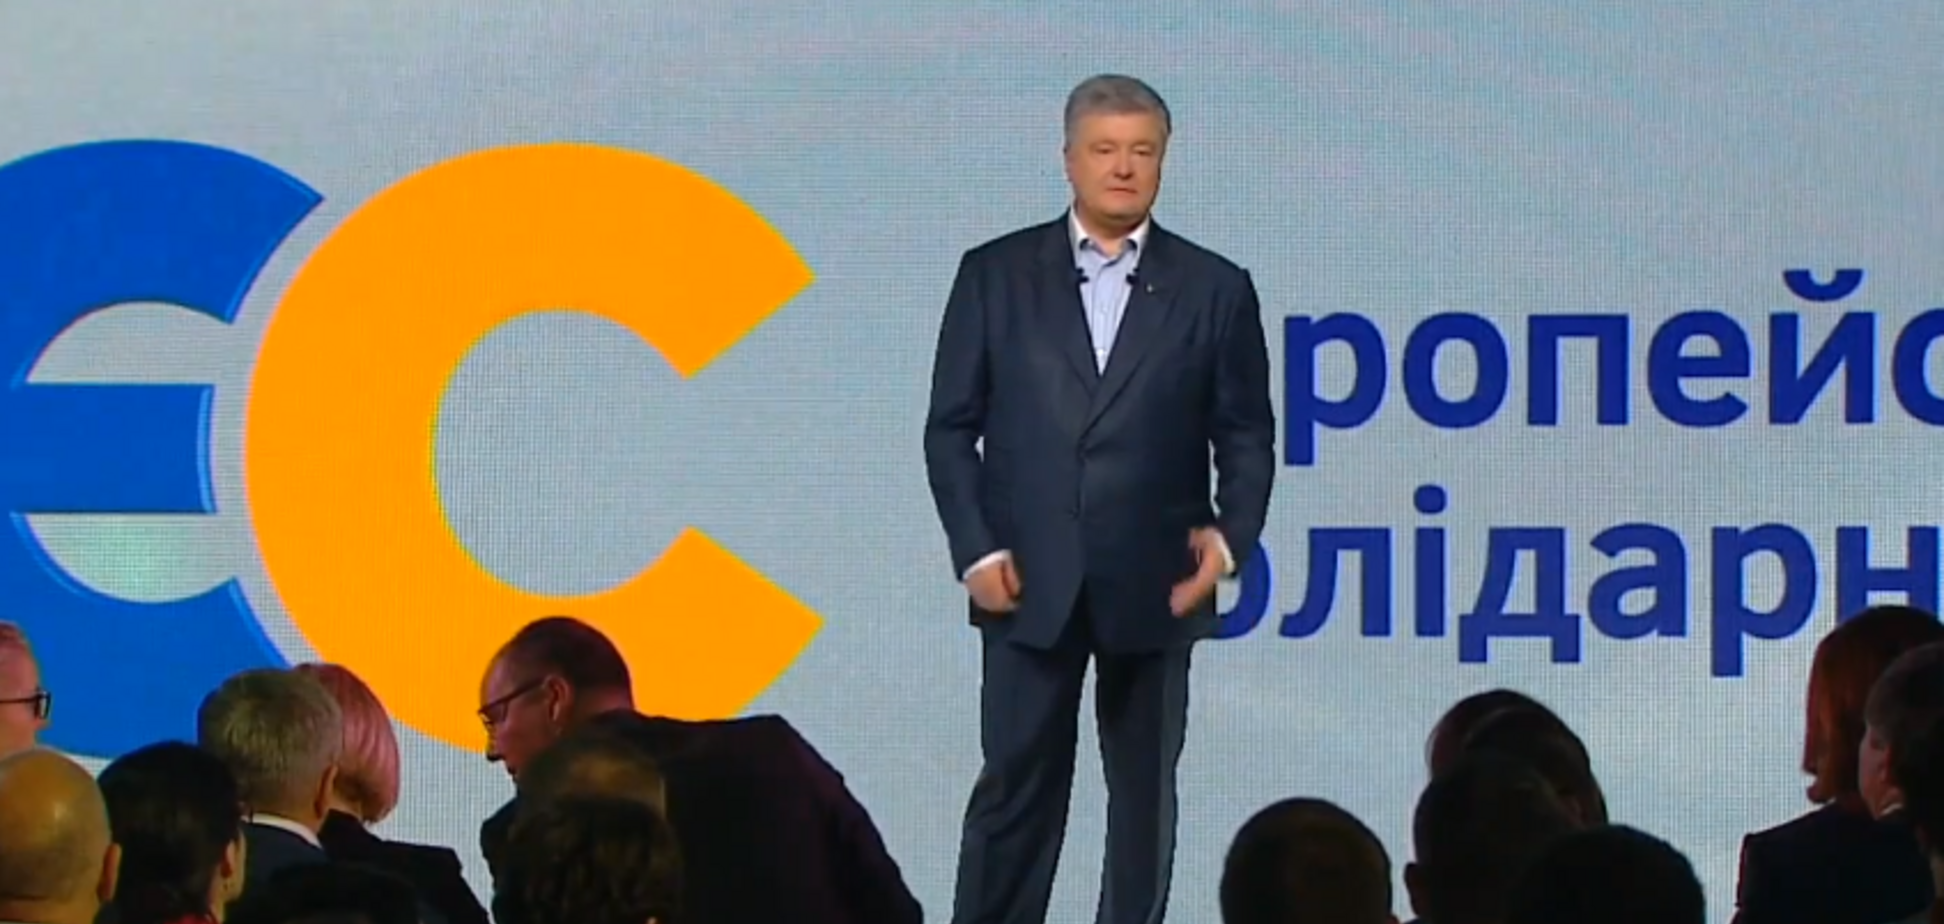 'Не допустить реванша': Порошенко назвал цель партии на выборах